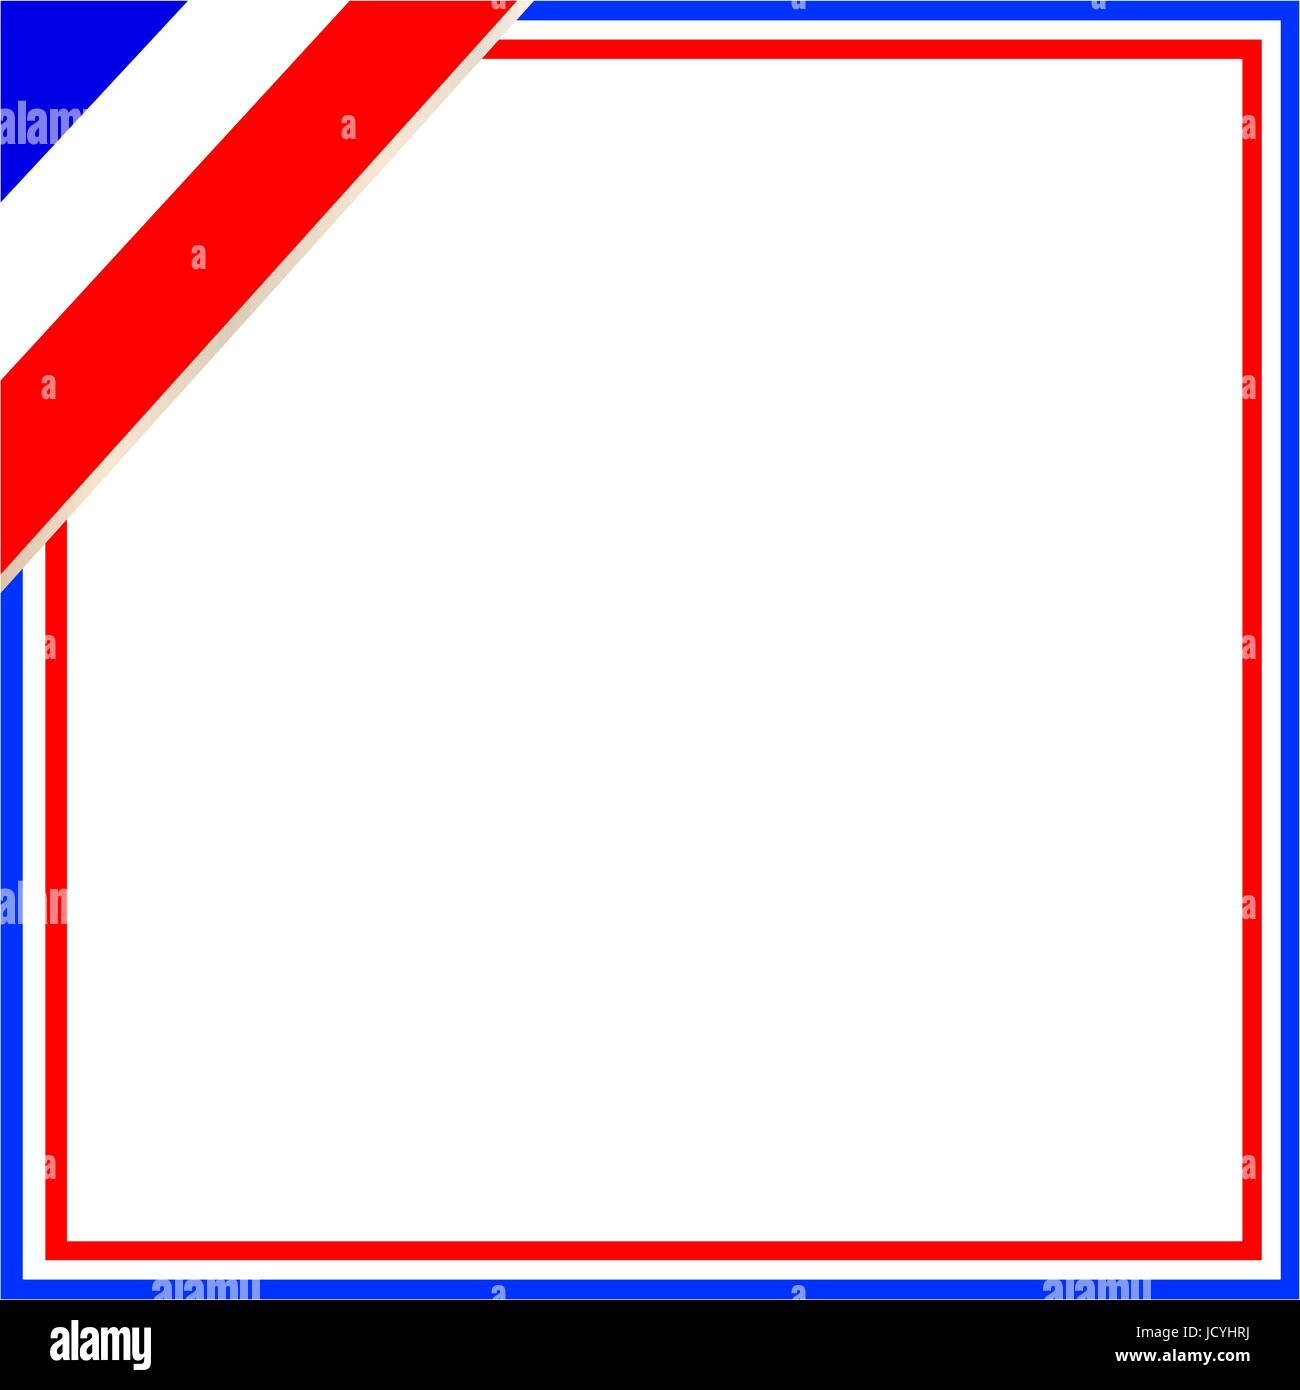 Bandiera francese cornice quadrata con spazio vuoto per il testo e le immagini Illustrazione Vettoriale